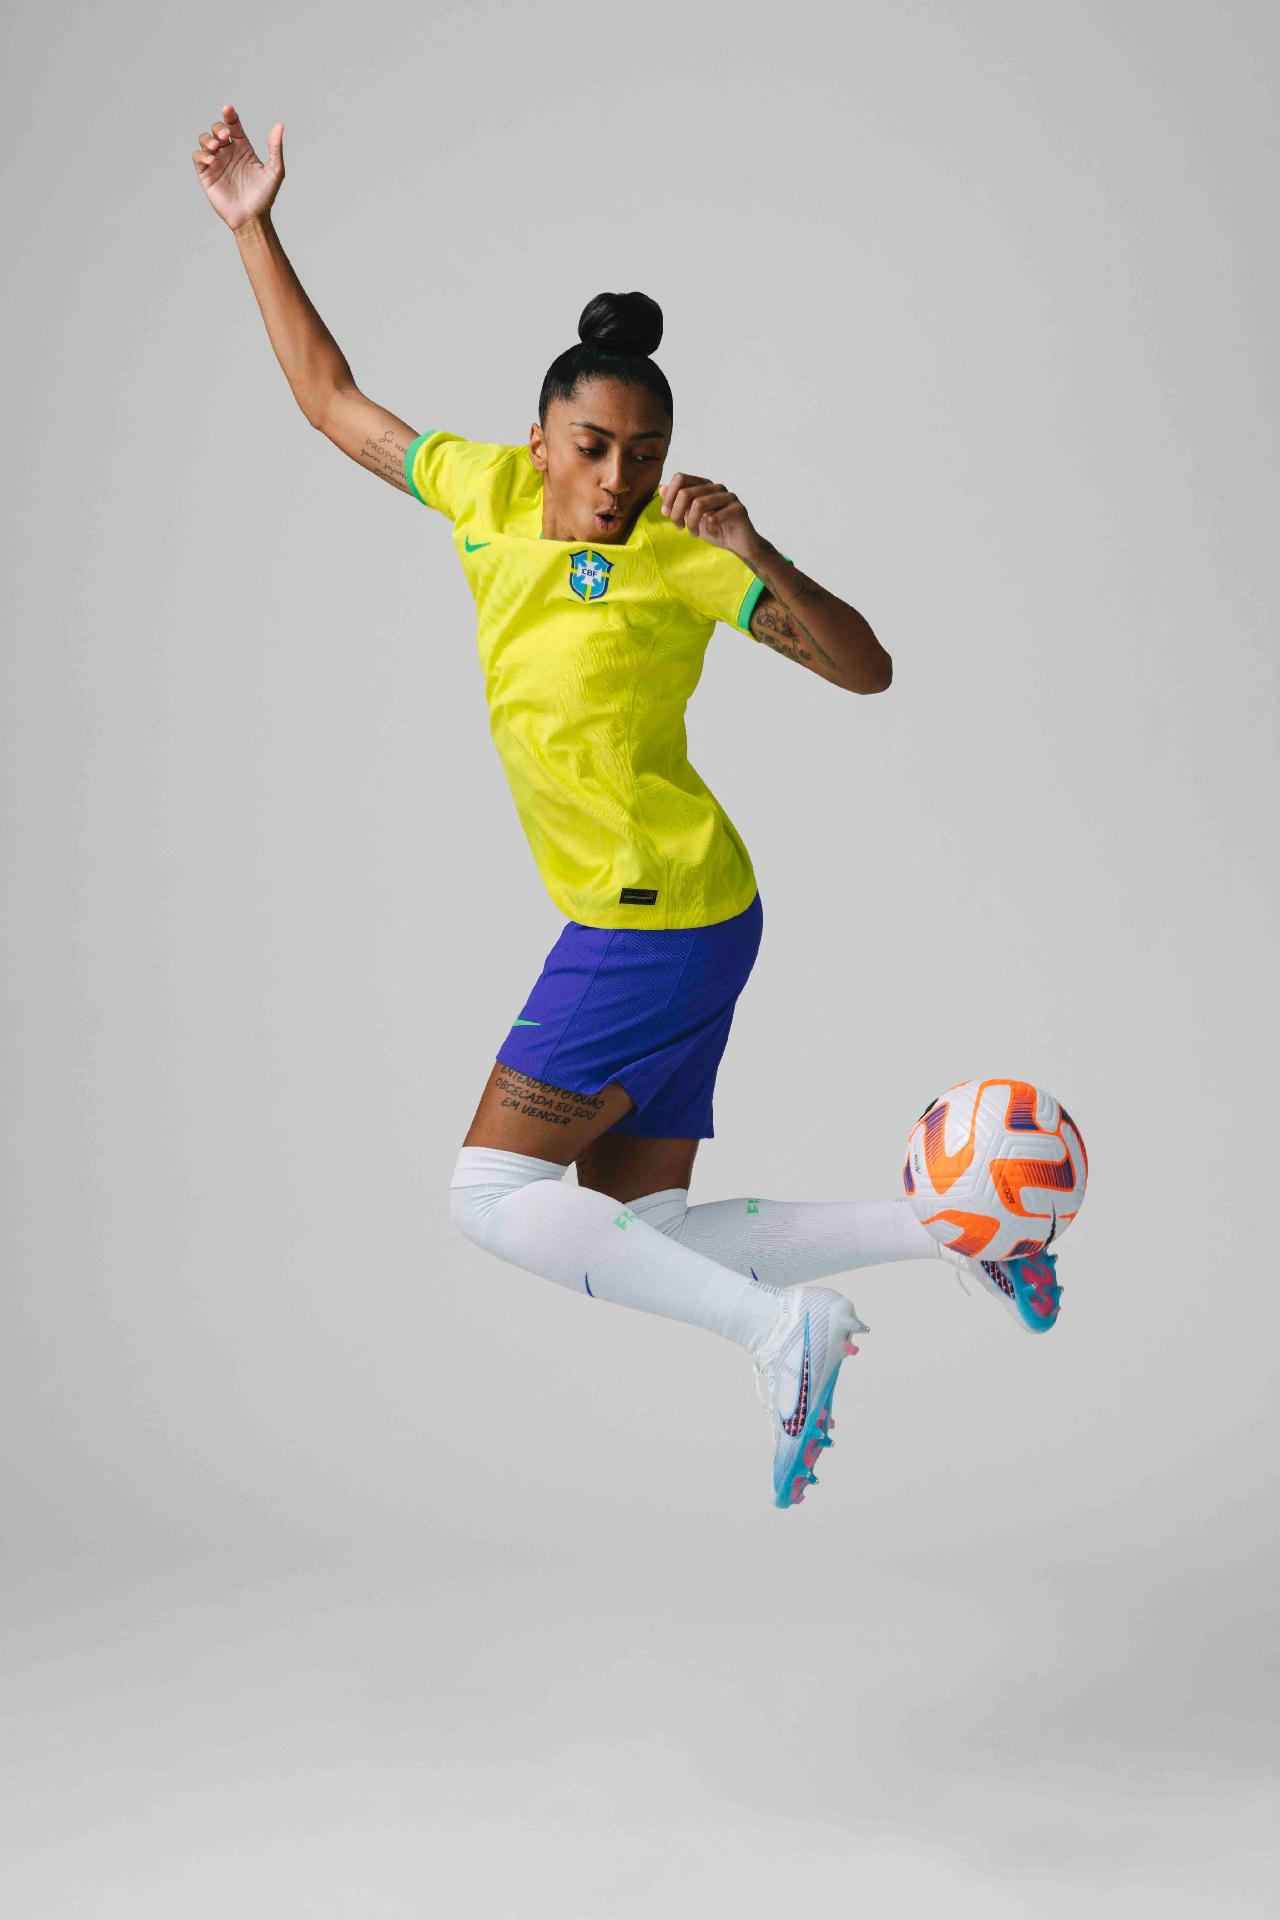 Para representar seleção feminina, Nike muda gênero do brasão real